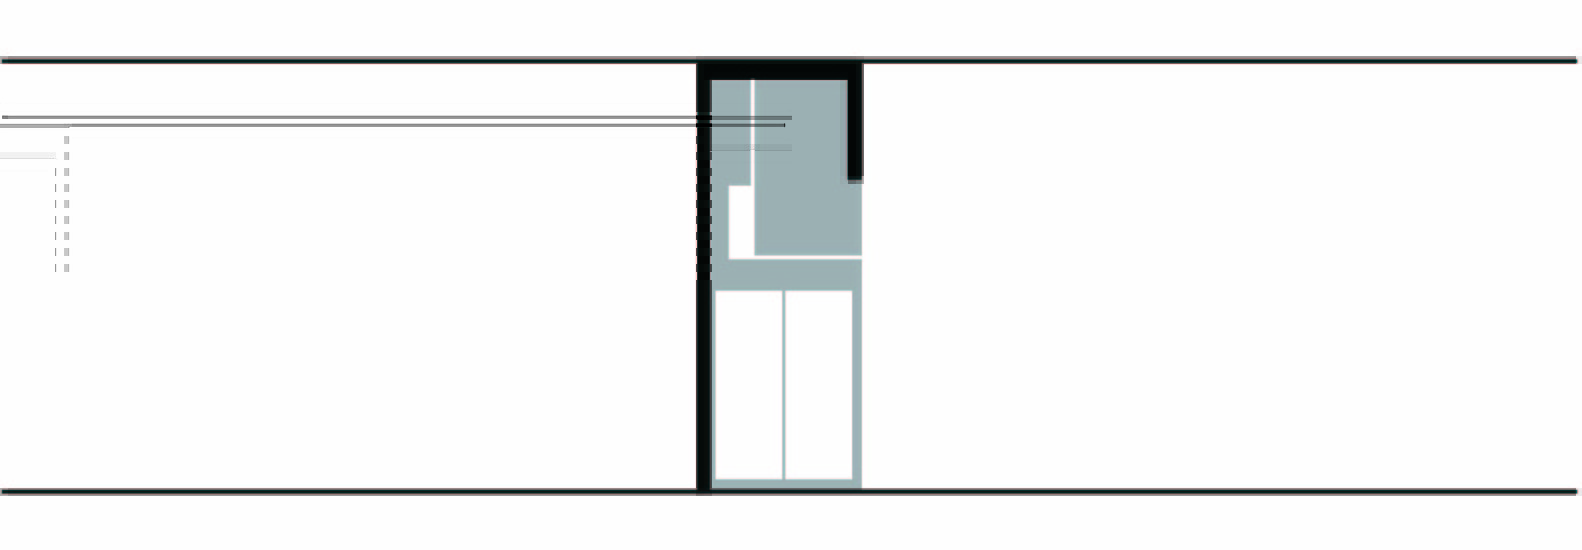 2_JOYS_©_Onexn_Architects.jpg